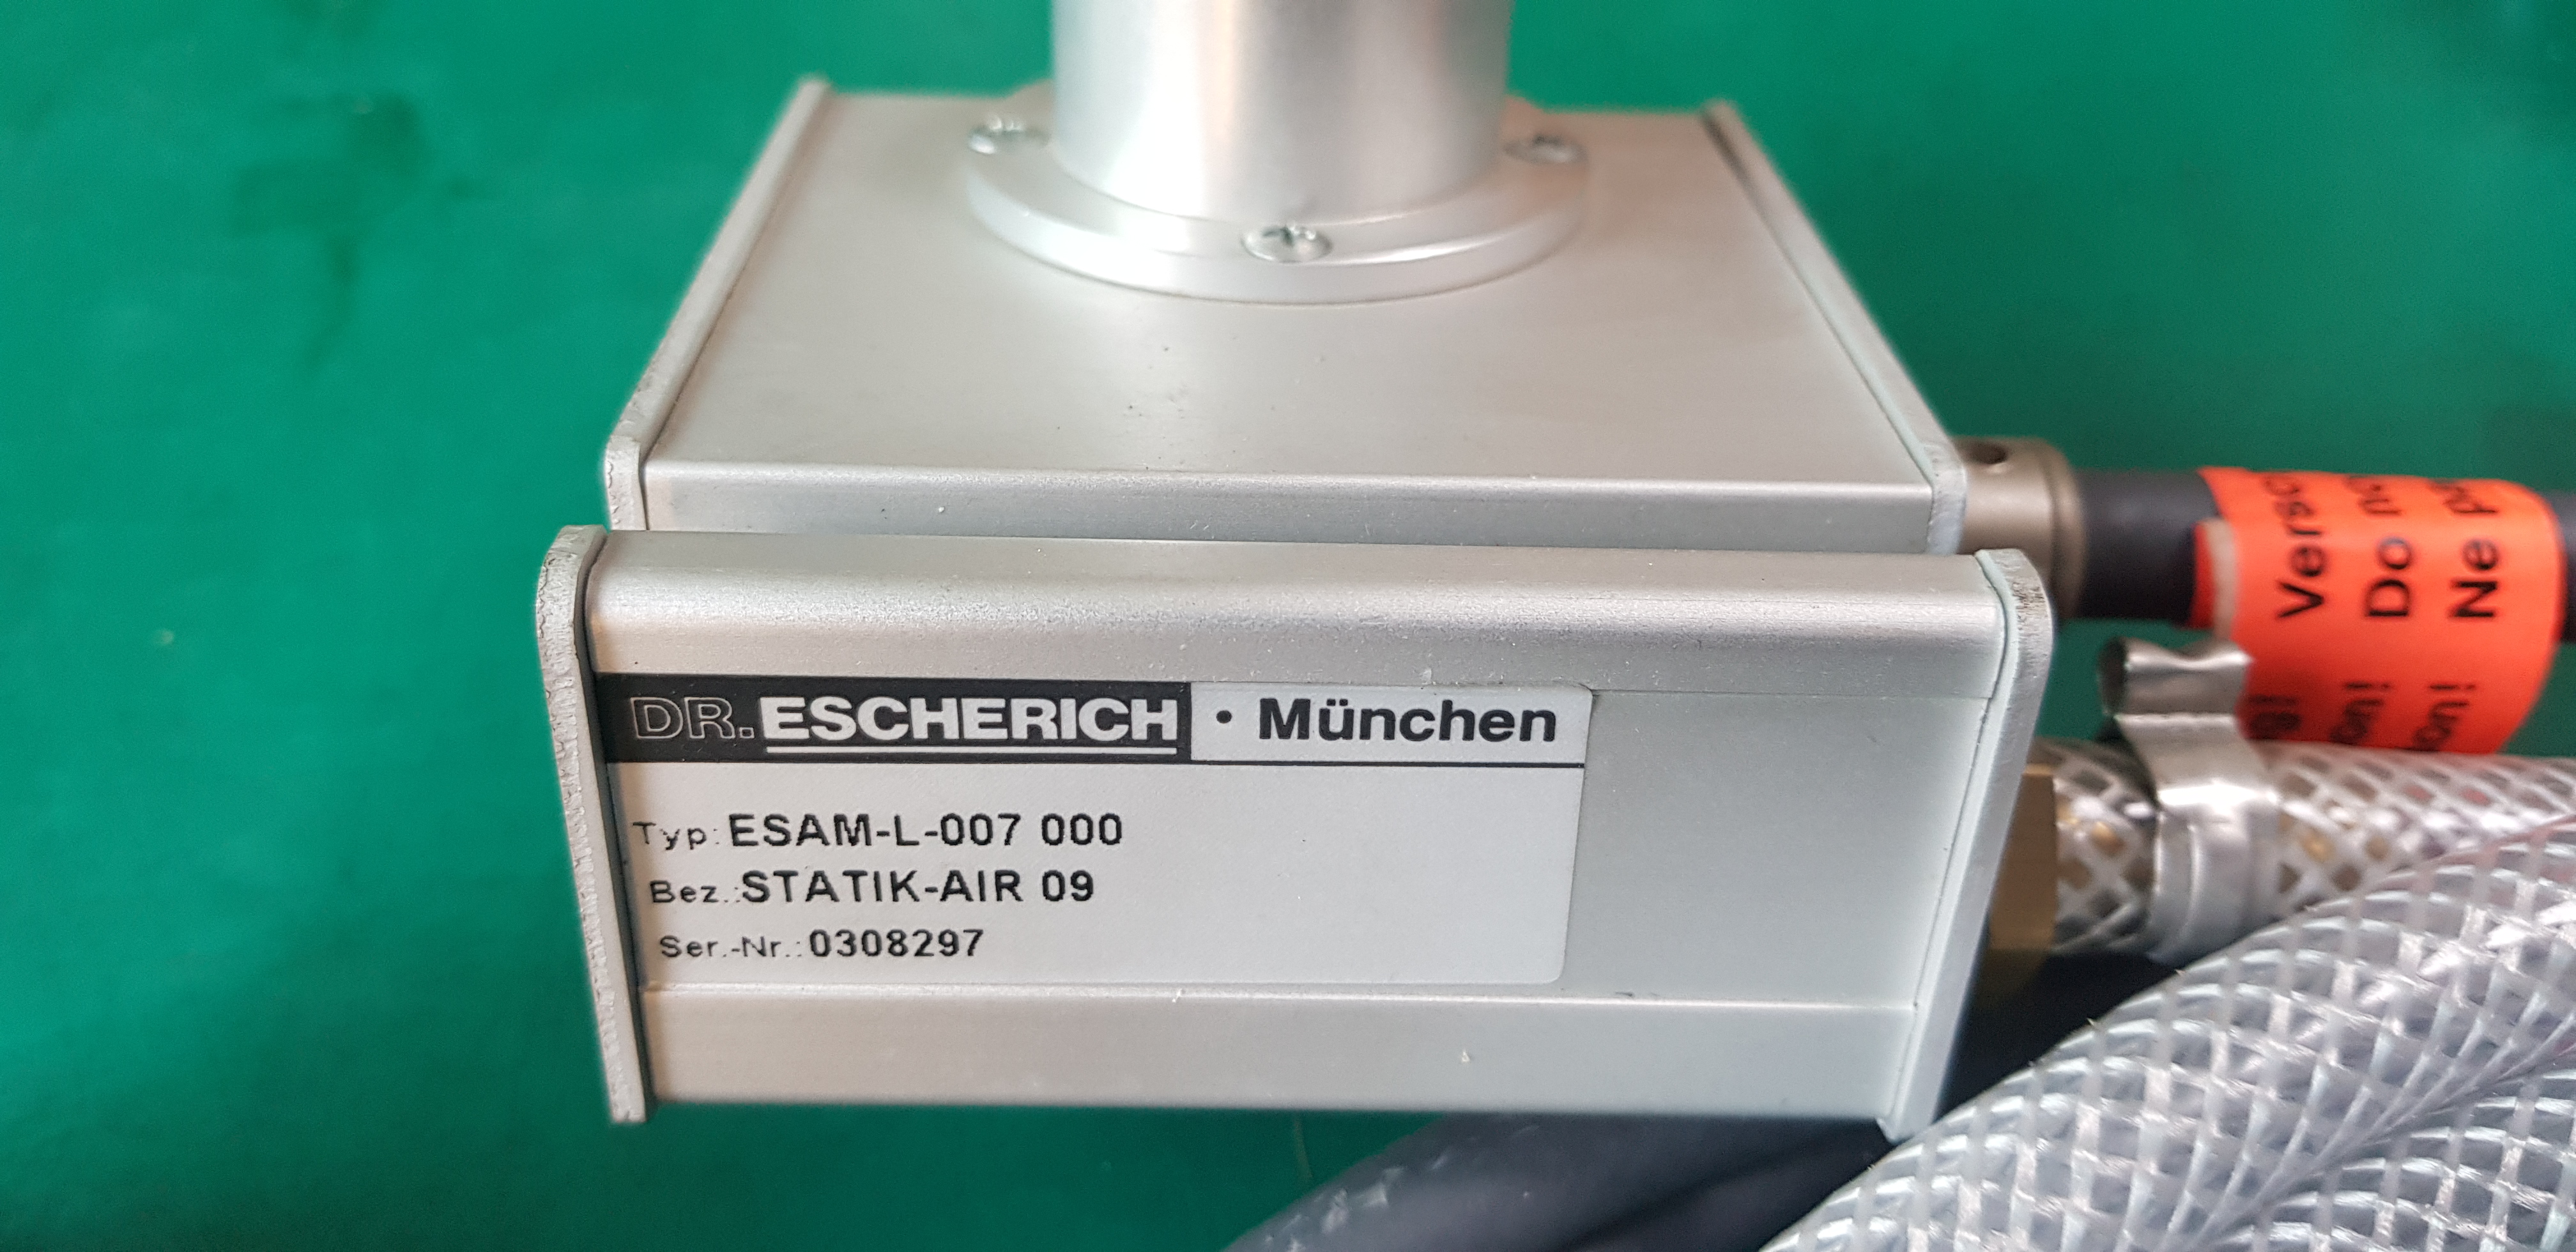 ESCHERICH ESAM-L-007 000(미사용품)